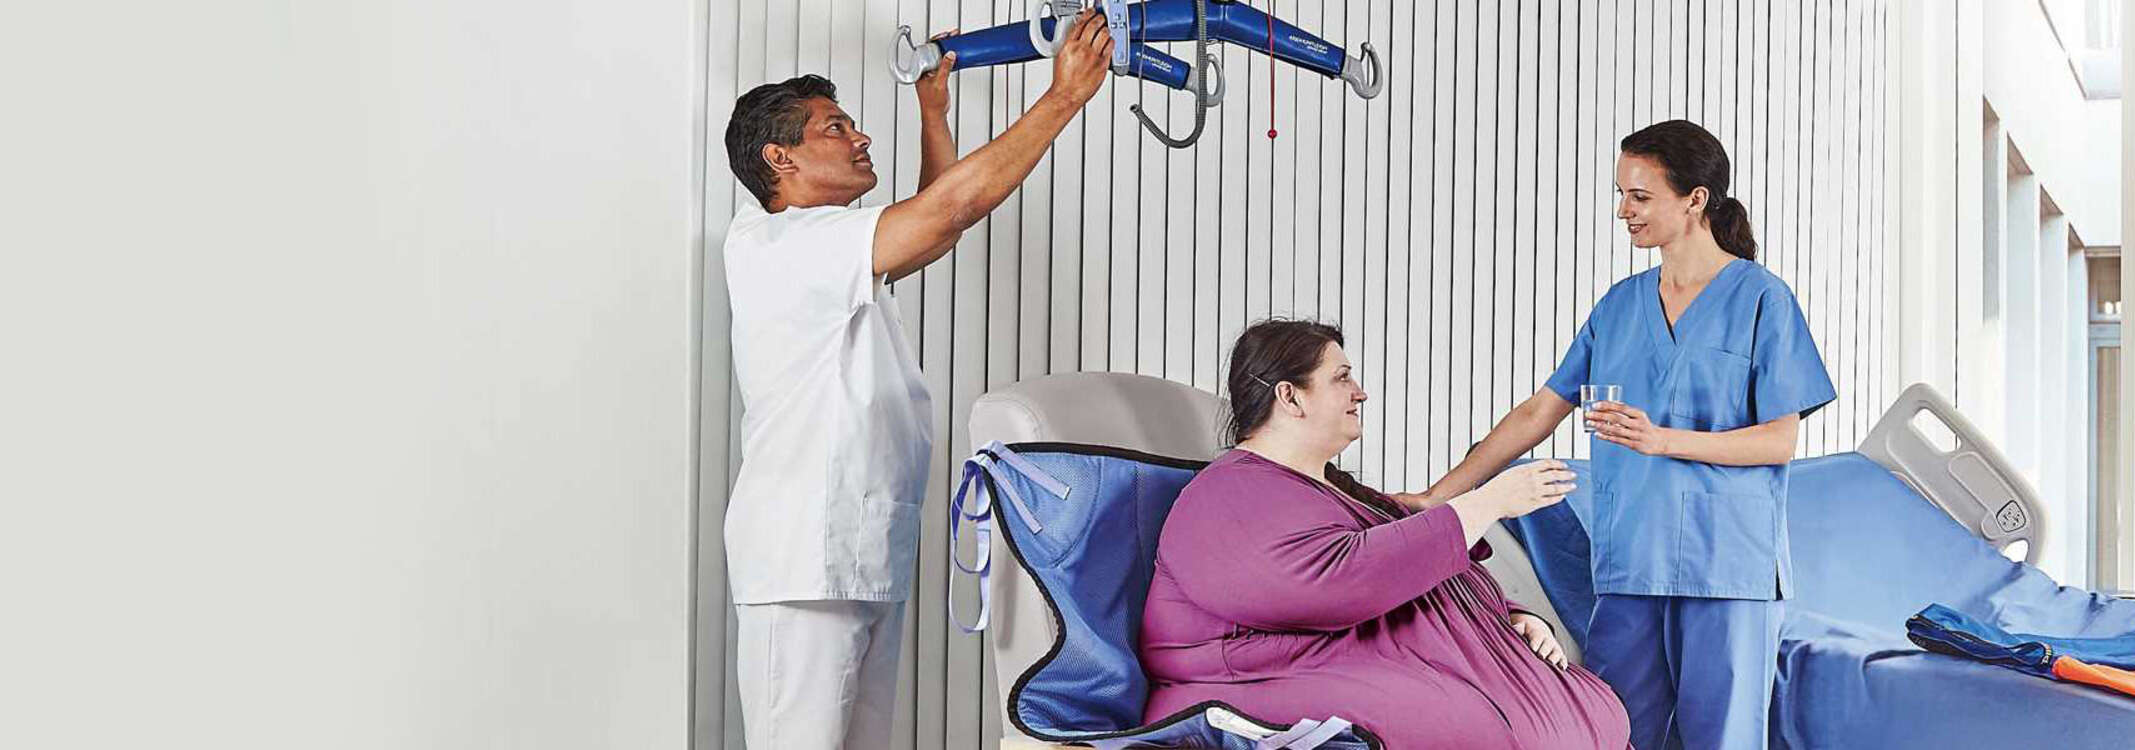 Stark übergewichtige Patientin mit zwei Pflegern und bariatrischem Krankenbett